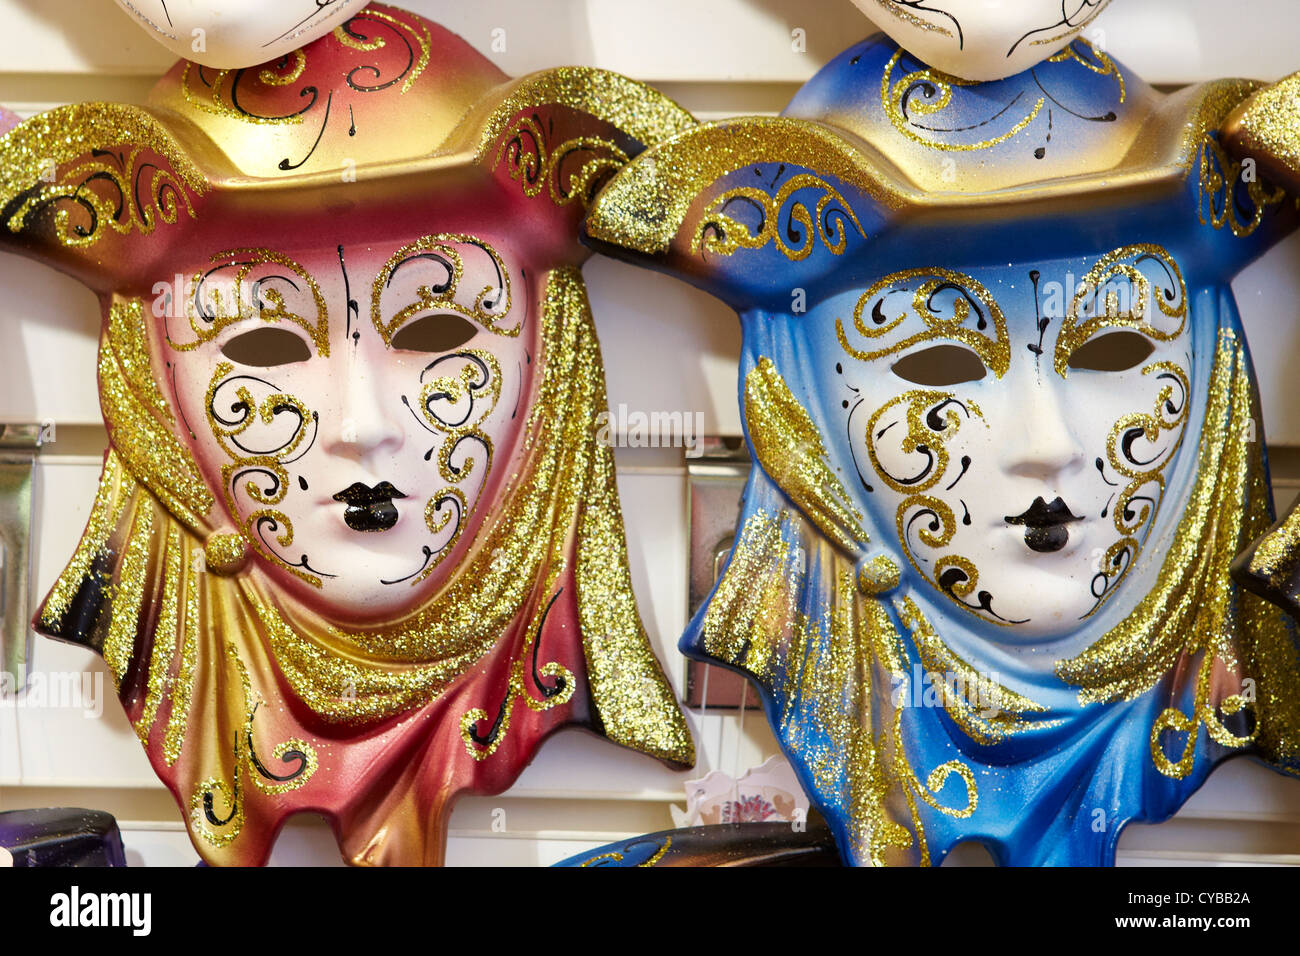 Tradicional Máscara De Carnaval De Venecia, Con Decoración Colorida Fotos,  retratos, imágenes y fotografía de archivo libres de derecho. Image 50457090